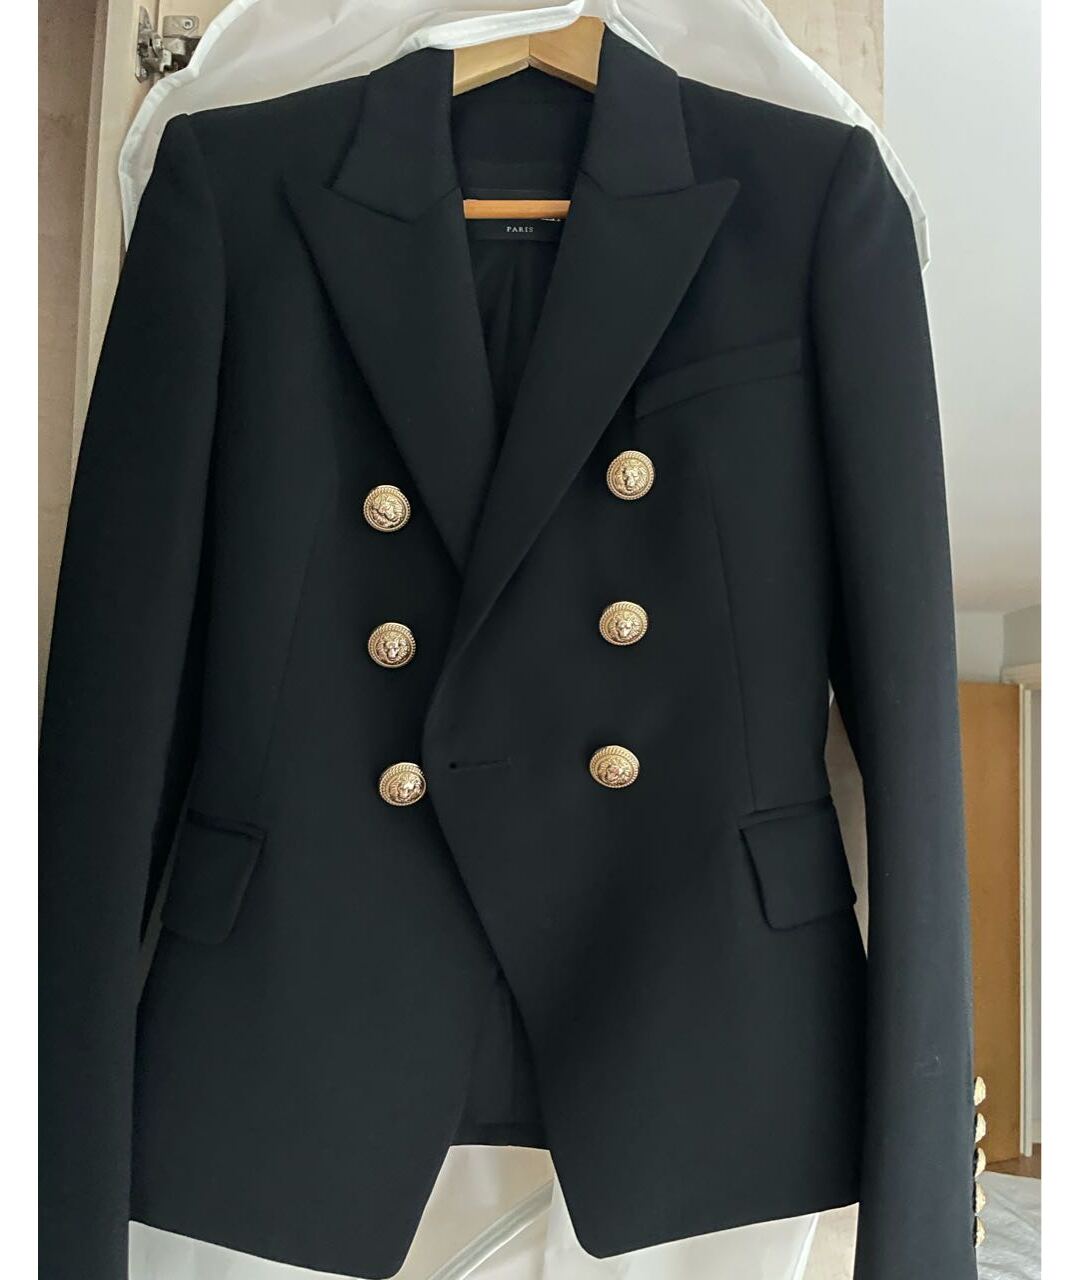 BALMAIN Черный шерстяной жакет/пиджак, фото 5